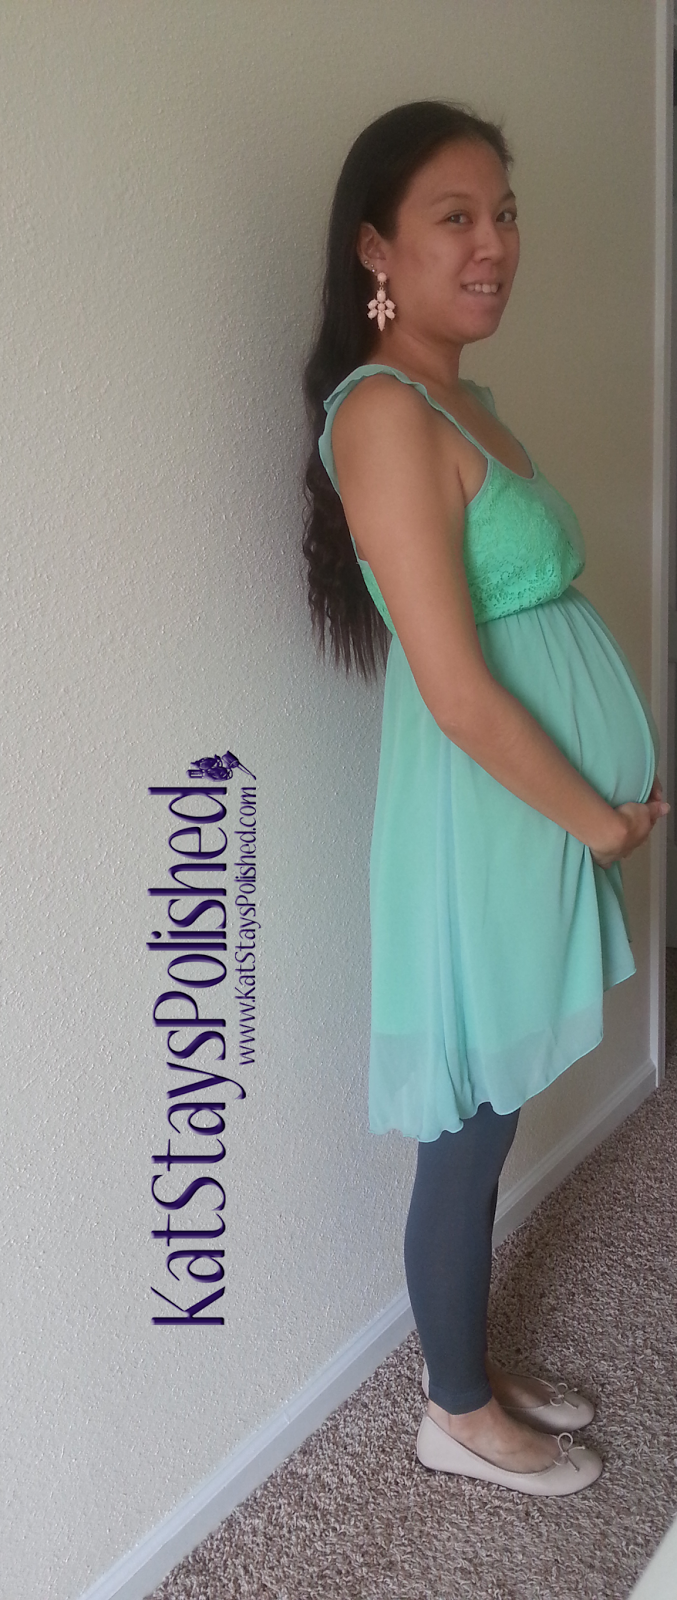 Pink Blush Maternity - Mint Green Chiffon Lace Accent Maternity Blouse | Kat Stays Polished